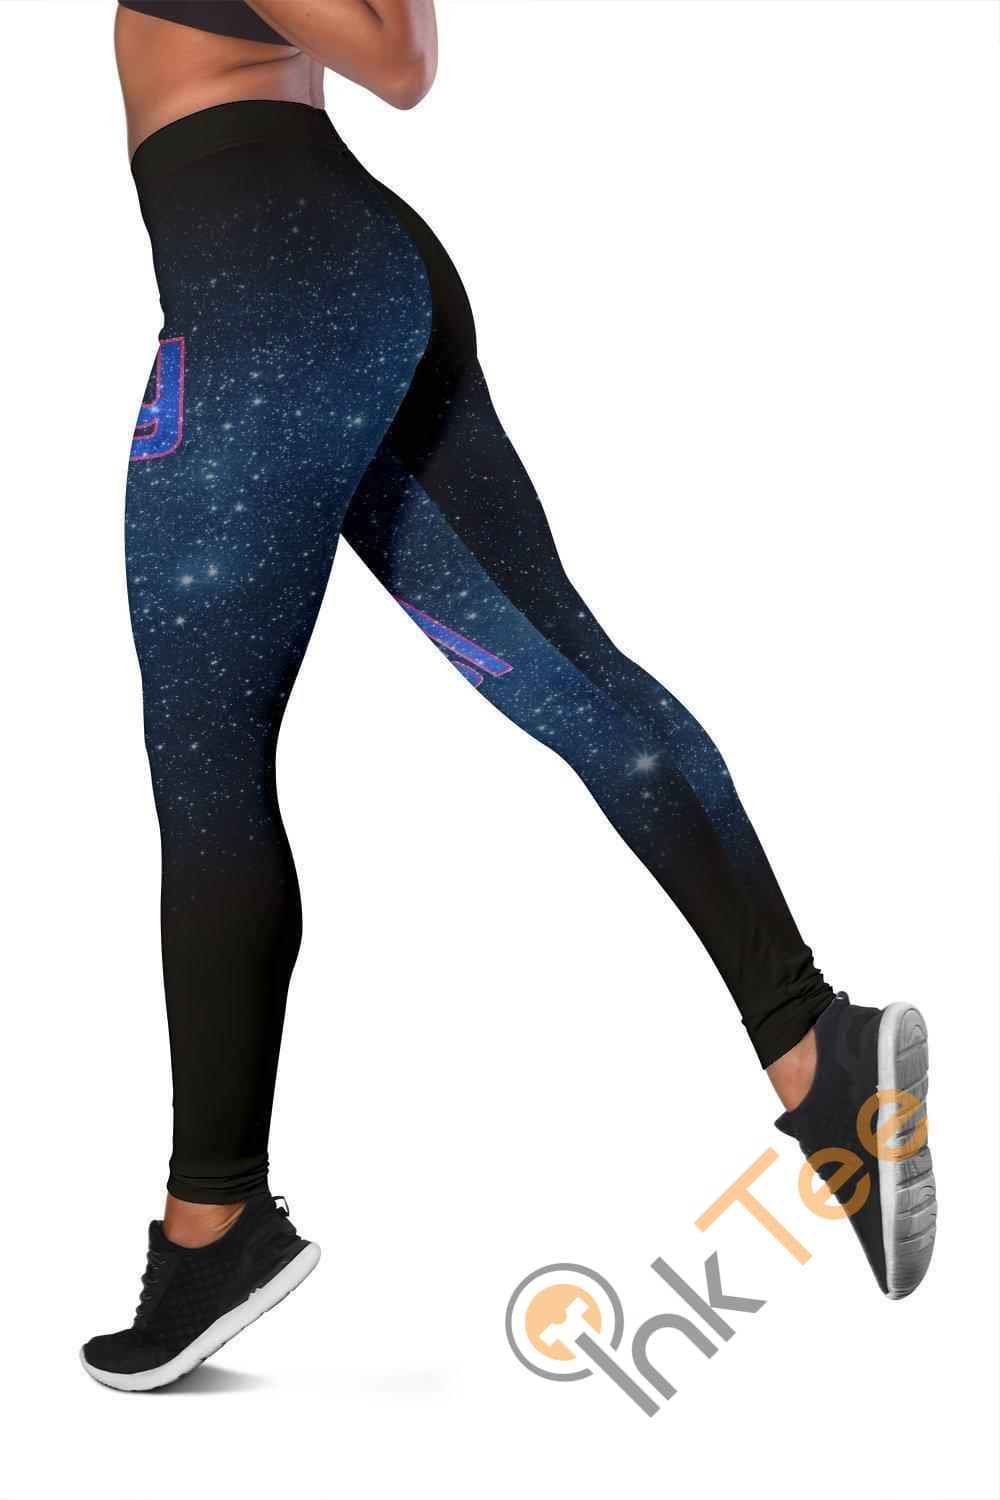 Inktee Store - New York Giants 3D All Over Print For Yoga Fitness Women'S Leggings Image